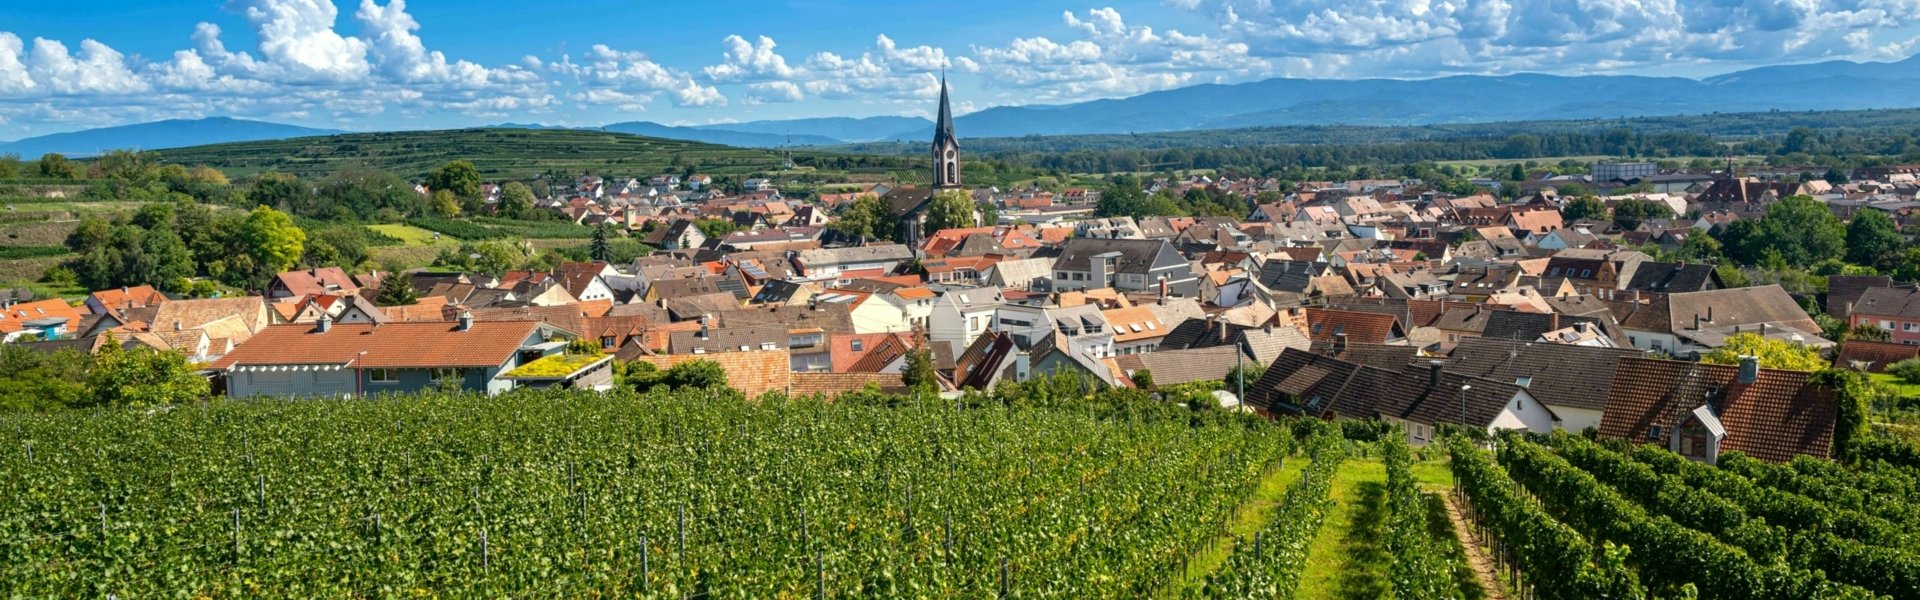 Luftaufnahme einer baden-württembergischen Kommune auf der im Vordergrund Agrarfläche und im Hintergrund der Ortskern mit Kirchturm zu sehen sind.